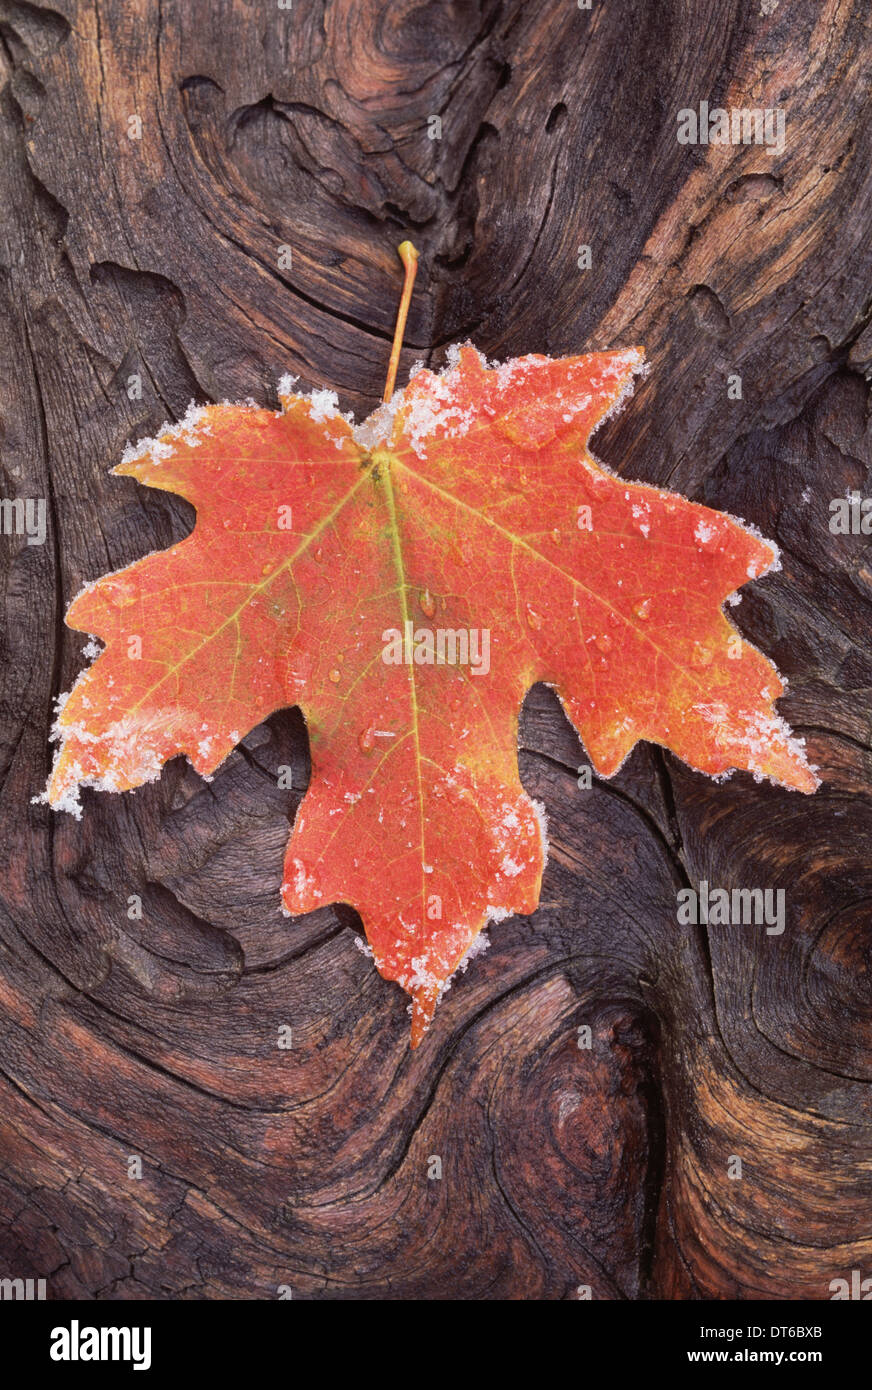 Eine mattierte rot braun Ahornblatt, Herbstlaub mit Eiskristallen an den Rändern. Knorrige Oberfläche des Holzes. Stockfoto